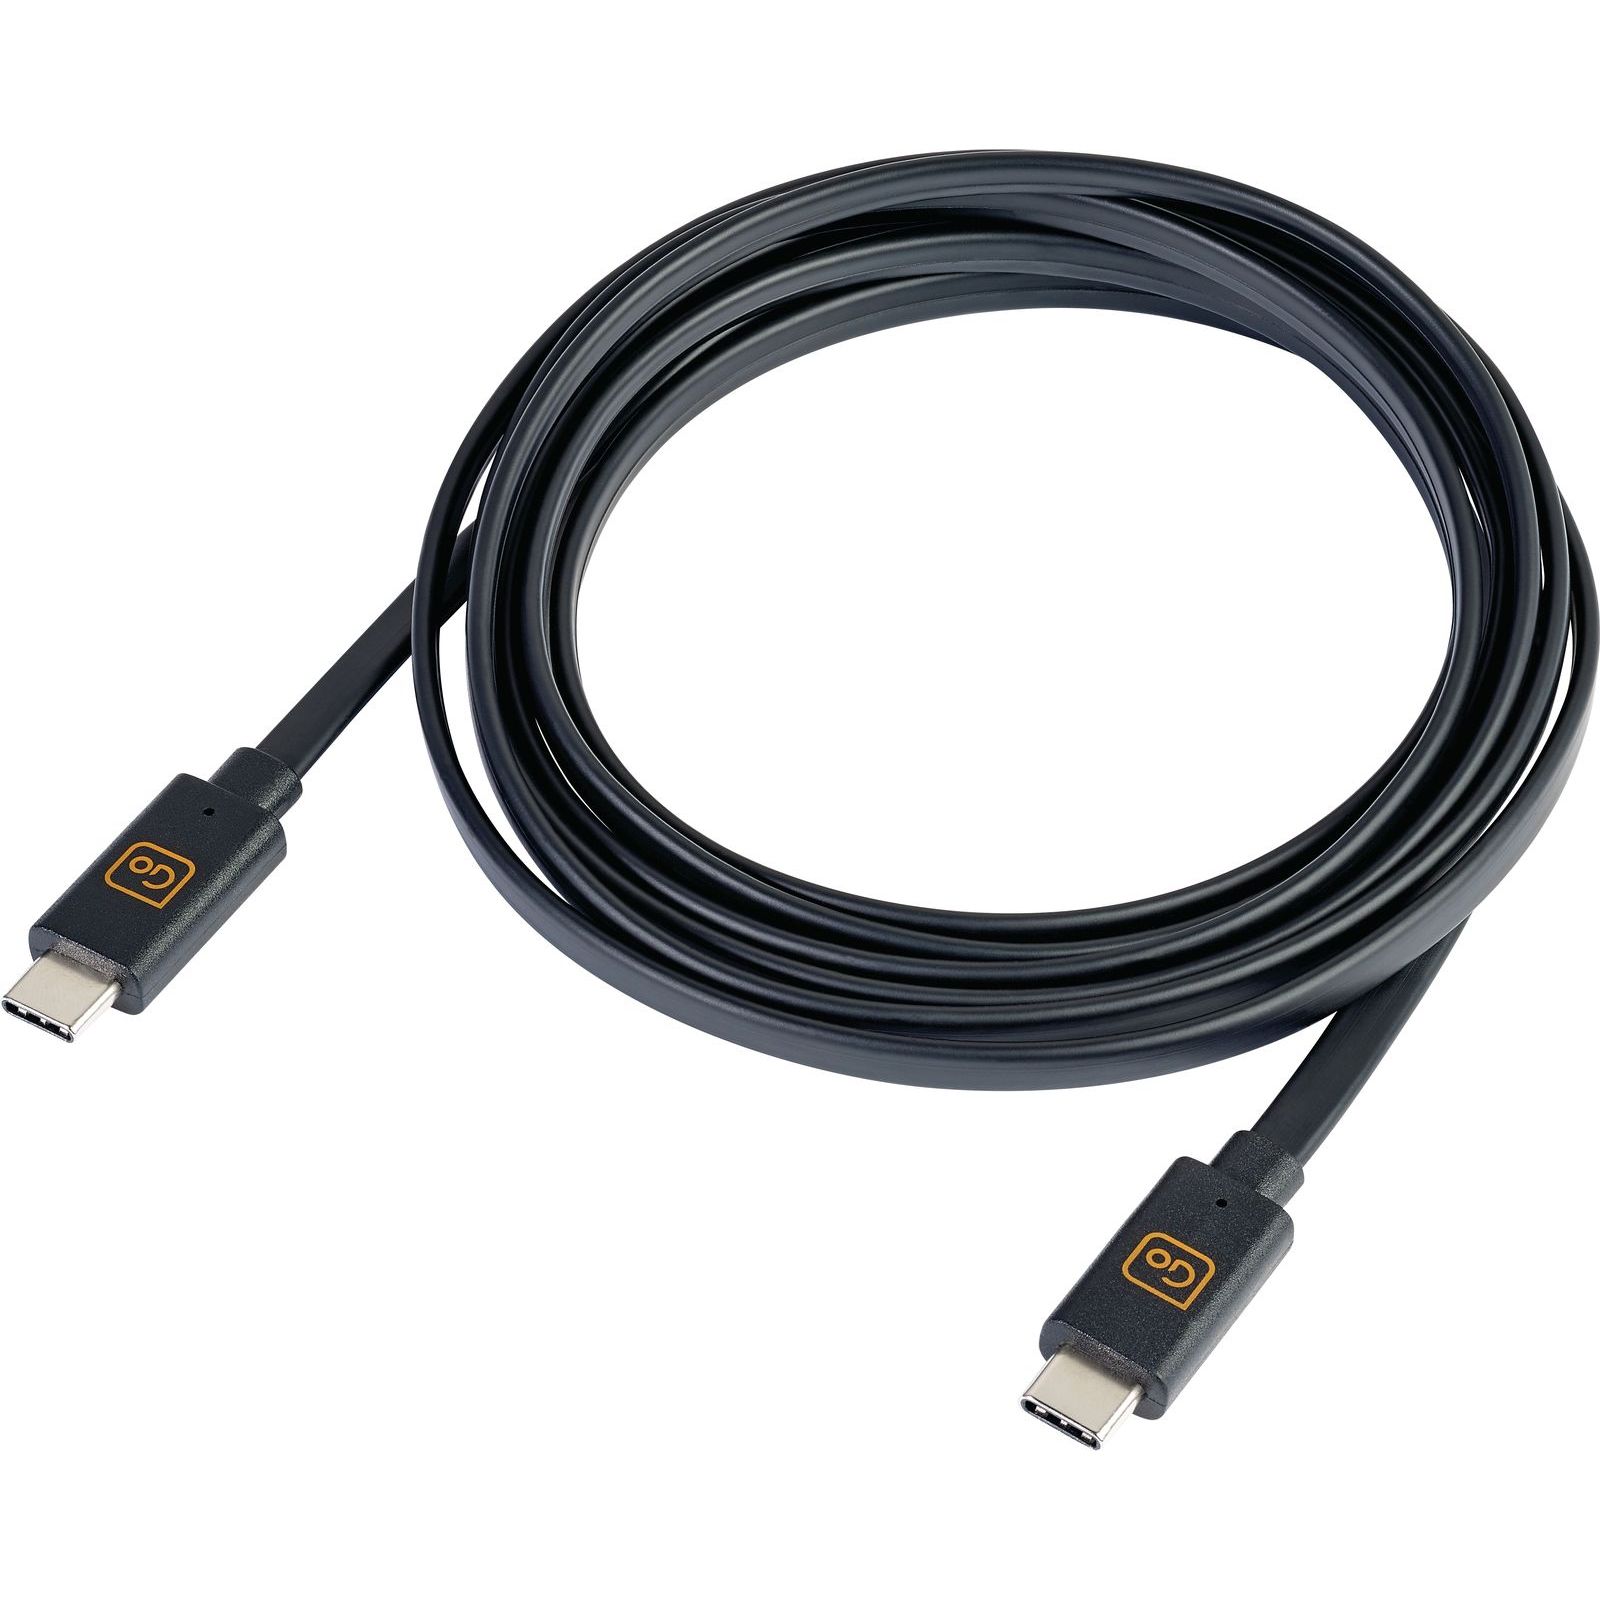 Woedend Larry Belmont vermogen 2M Dual USB-C Cable